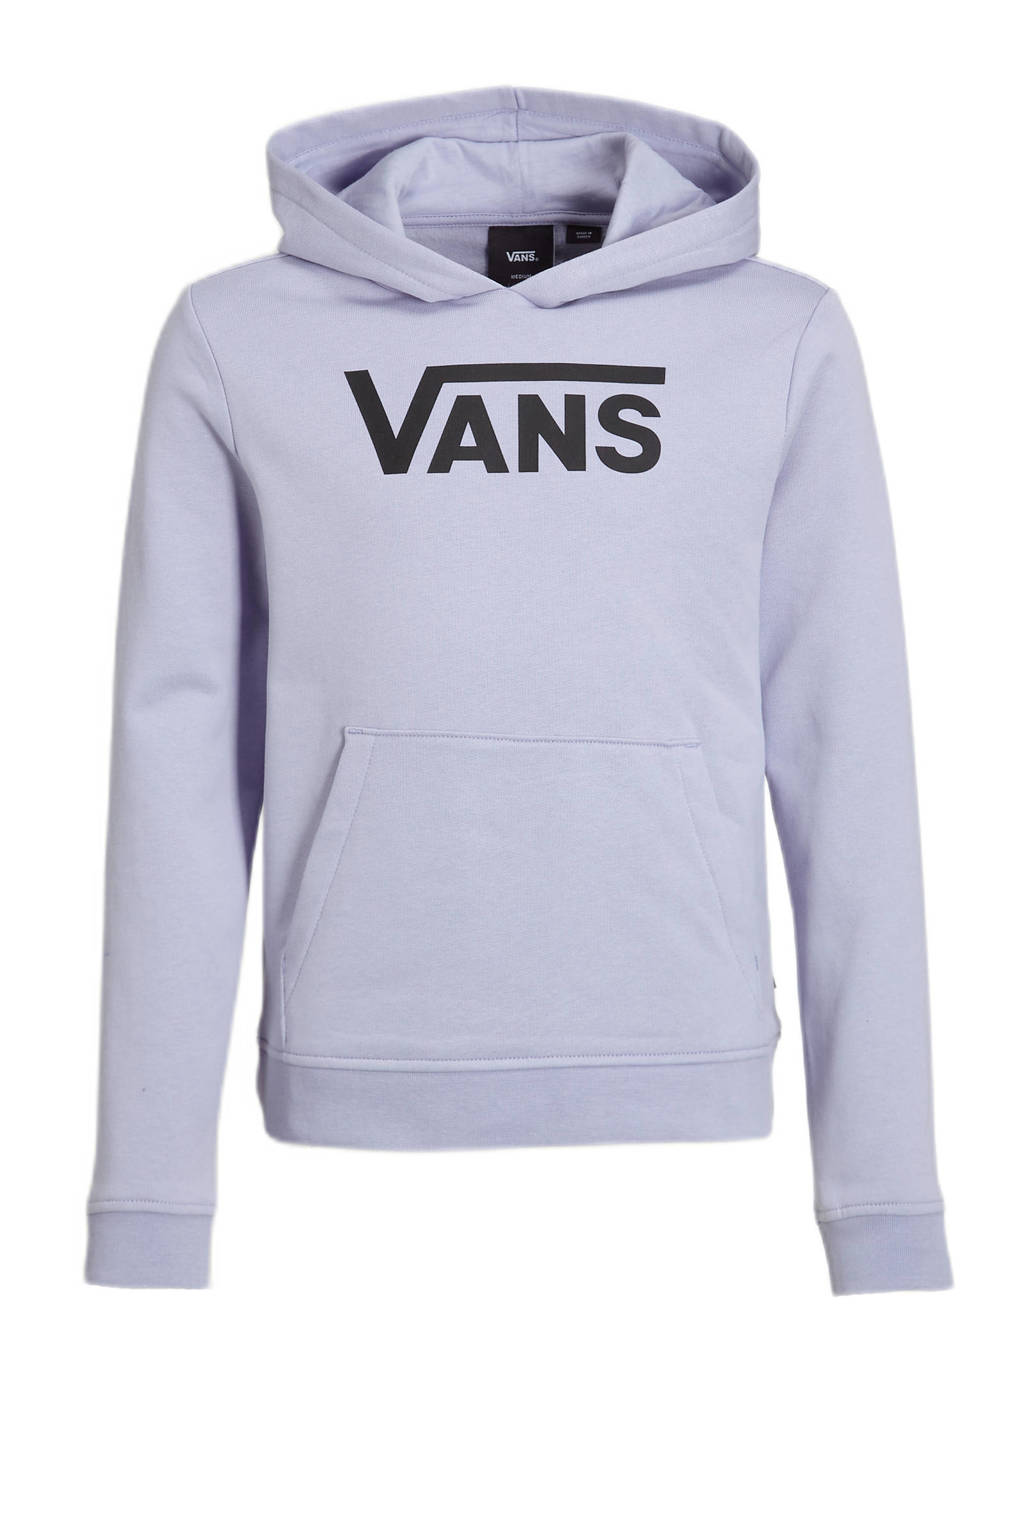 VANS hoodie Flying V met logo lila/zwart